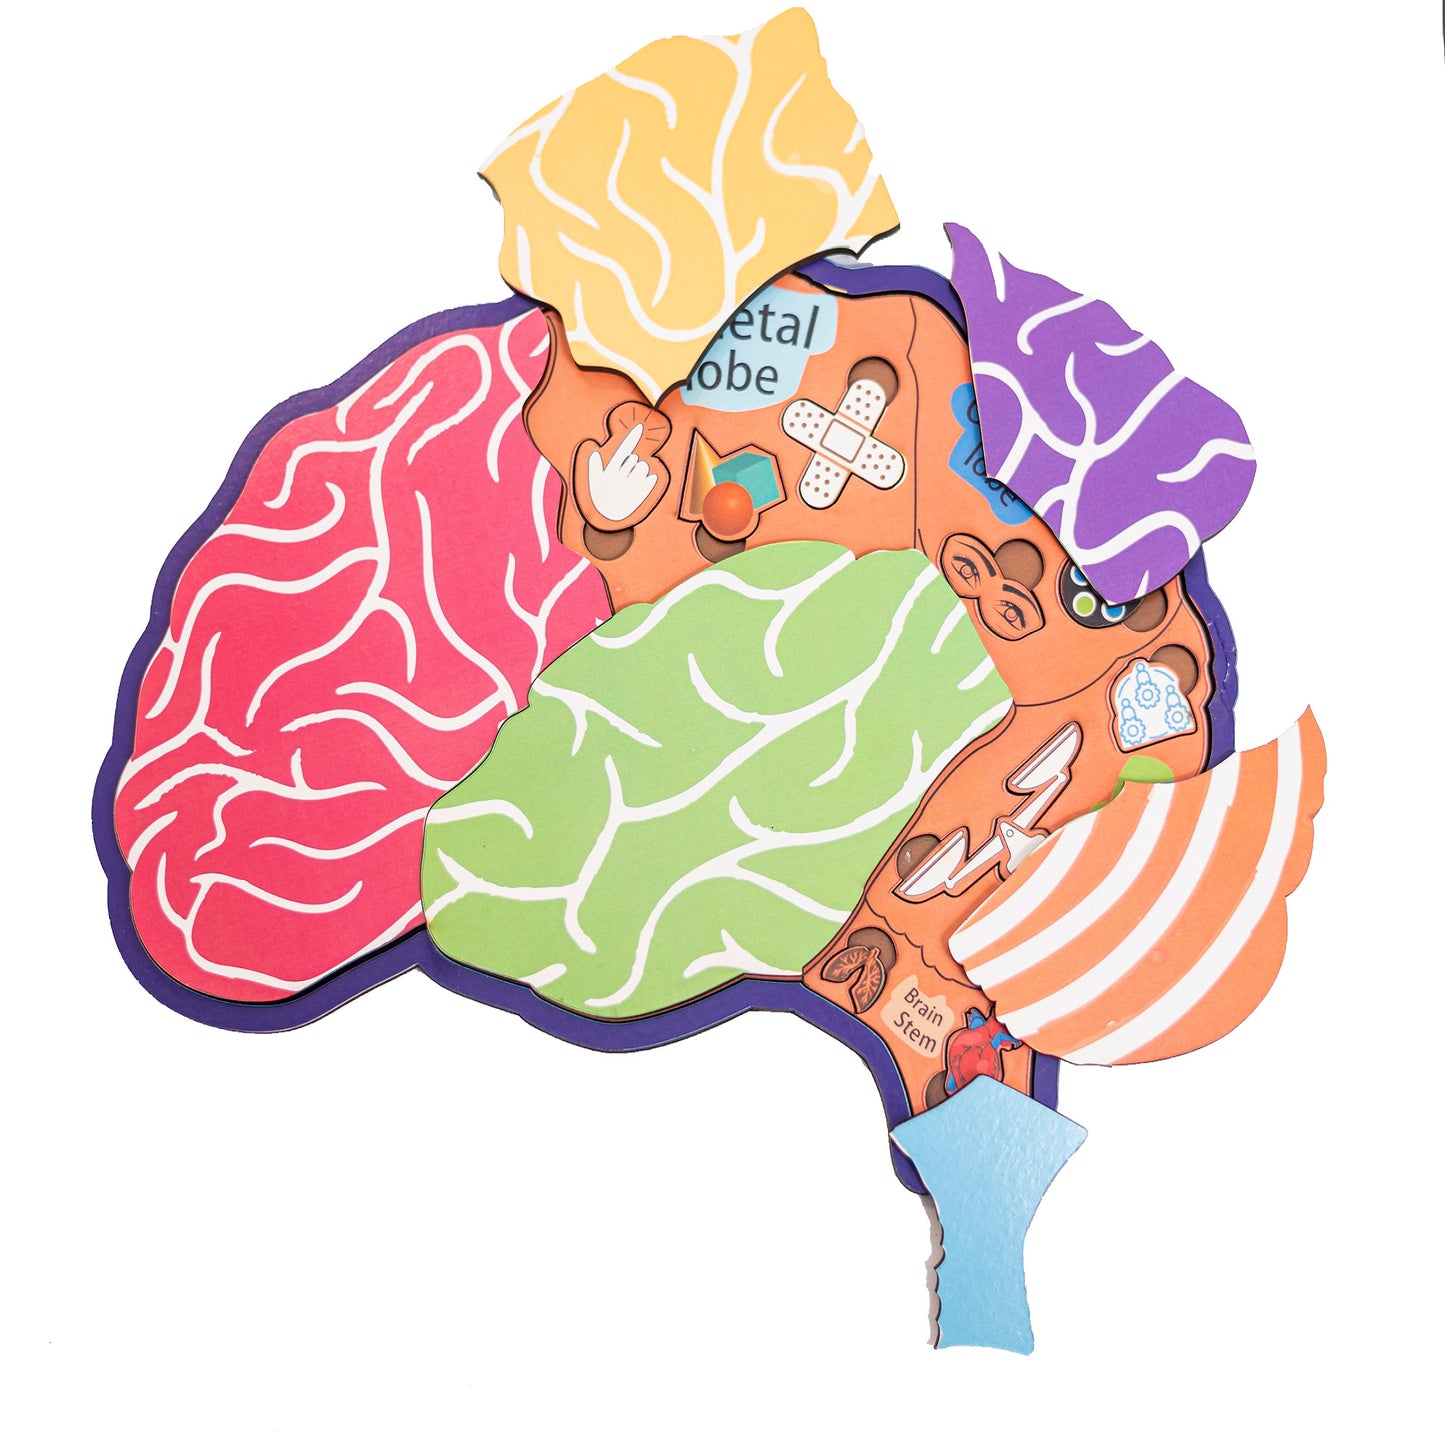 Anatomy of Brain Learning Board